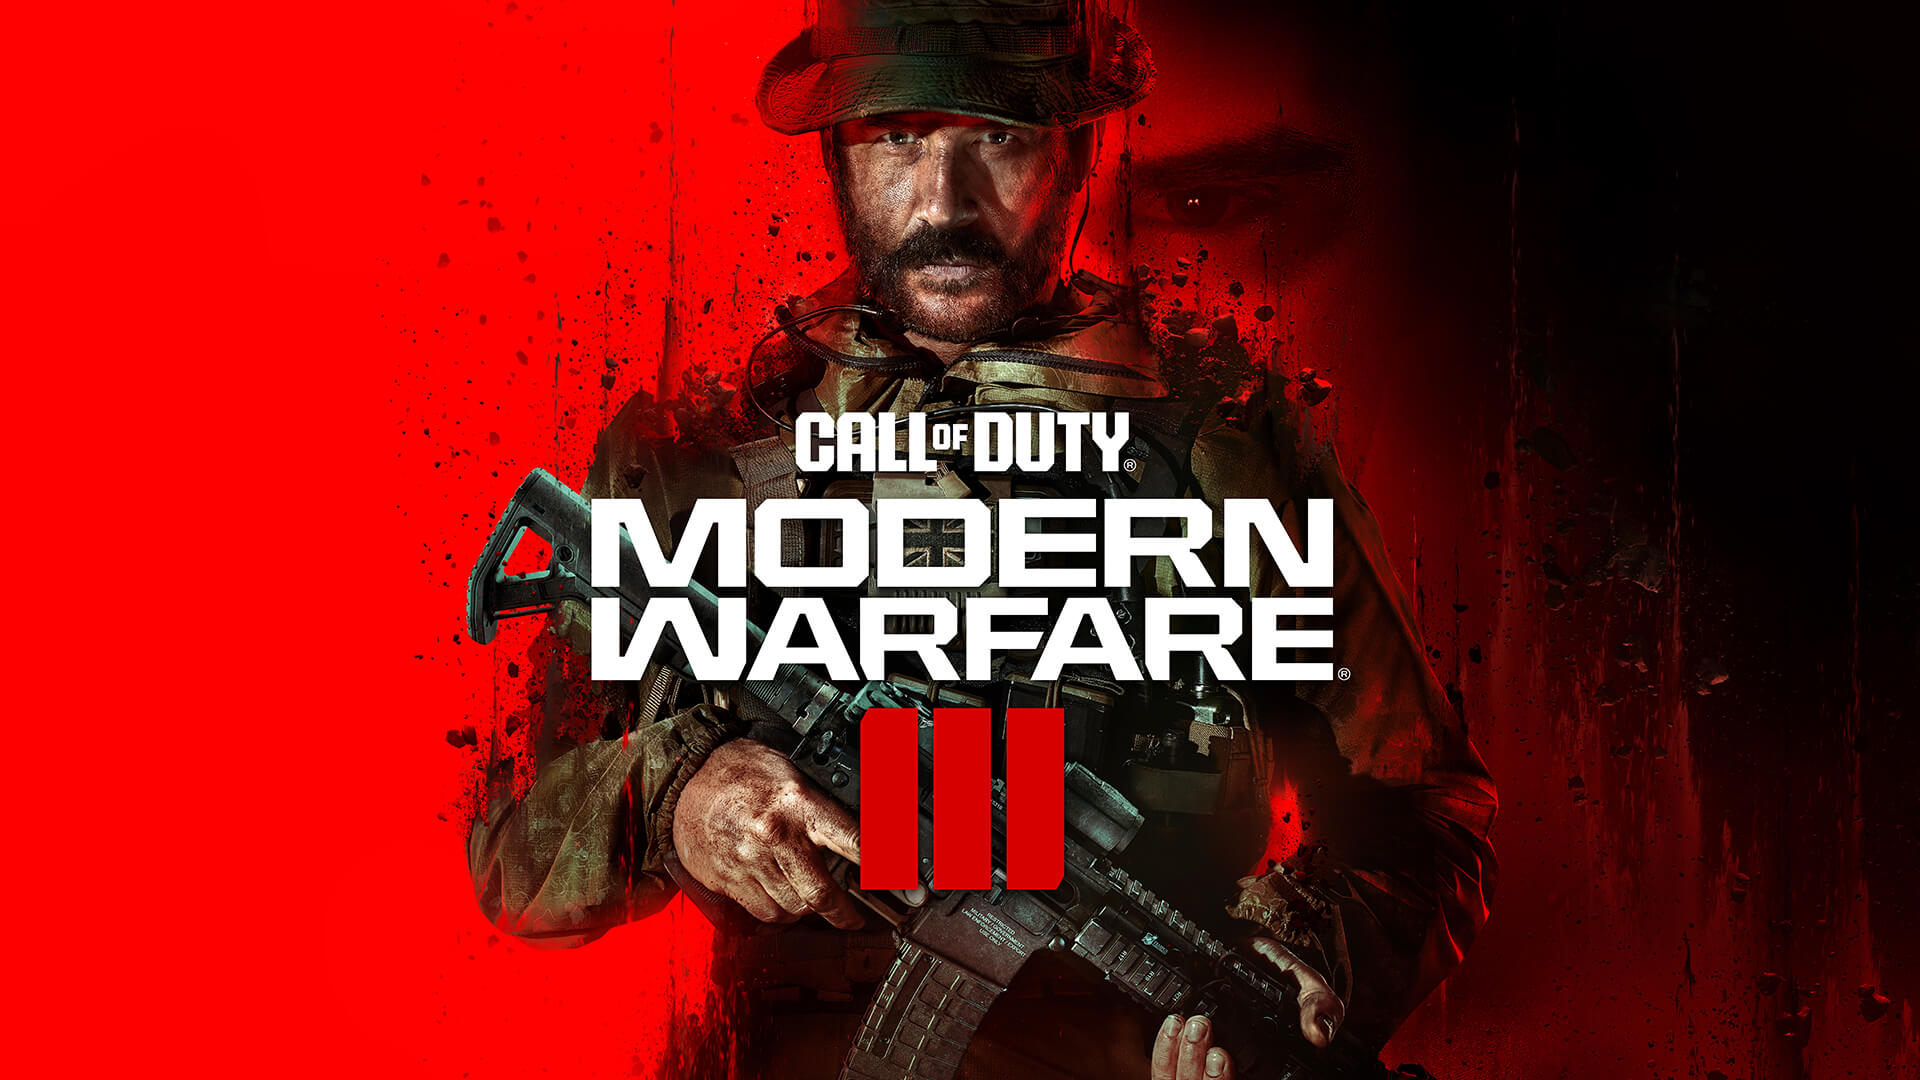 Modern Warfare 3 ganhou novidades para o multiplayer